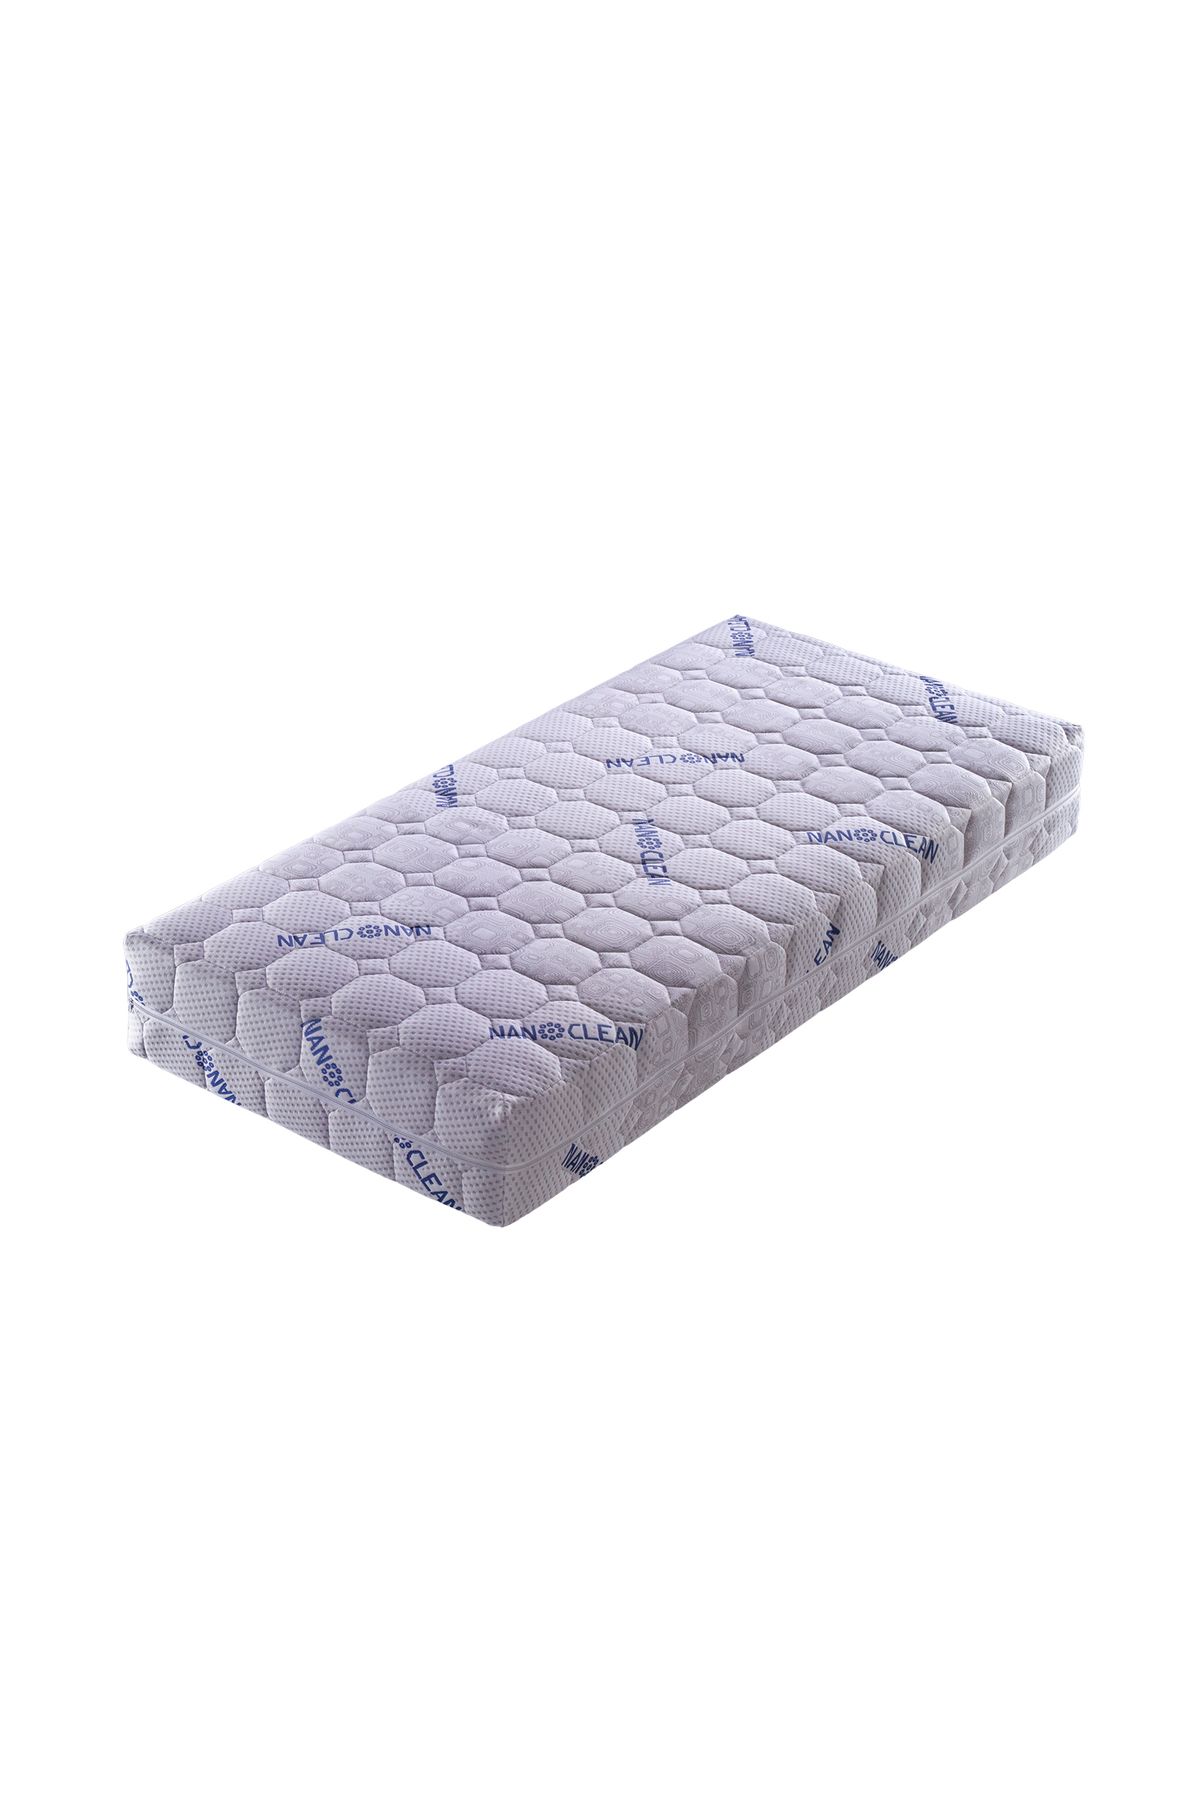 Artex Nano Bebek Yatağı 70x110 Kılıflı 12cm Süngerli Yatak Park Yatak Oyun Parkı